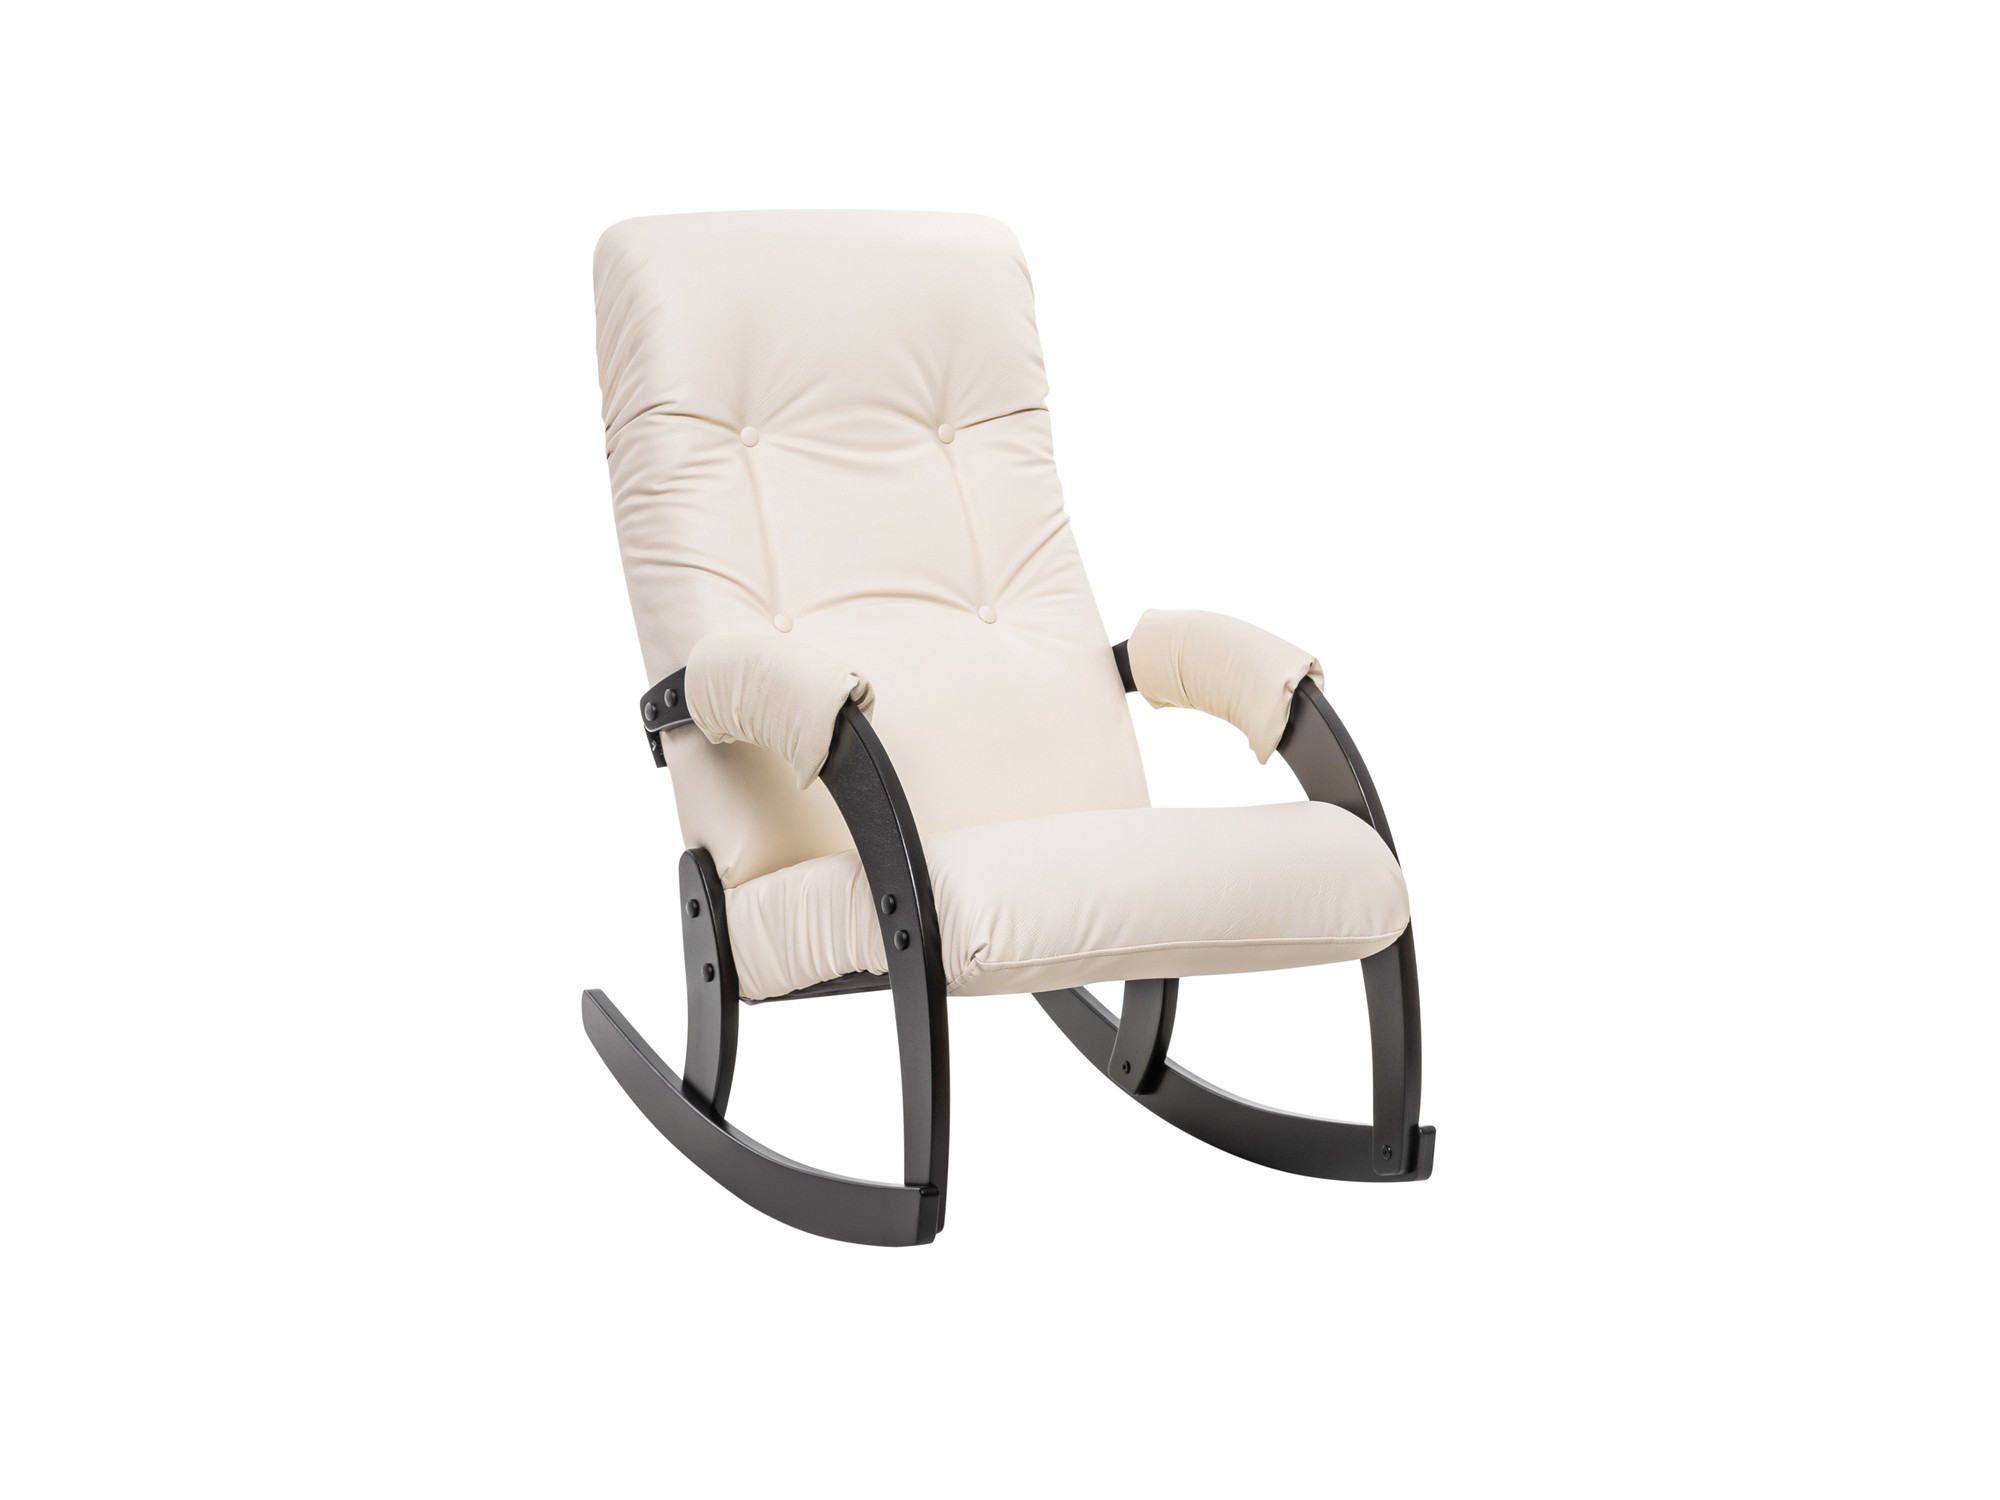 Кресло-качалка Модель 67 Венге, к/з Dundi 112 MebelVia Dundi 112, Экокожа, Фанера, шпон, лак кресло качалка модель 67